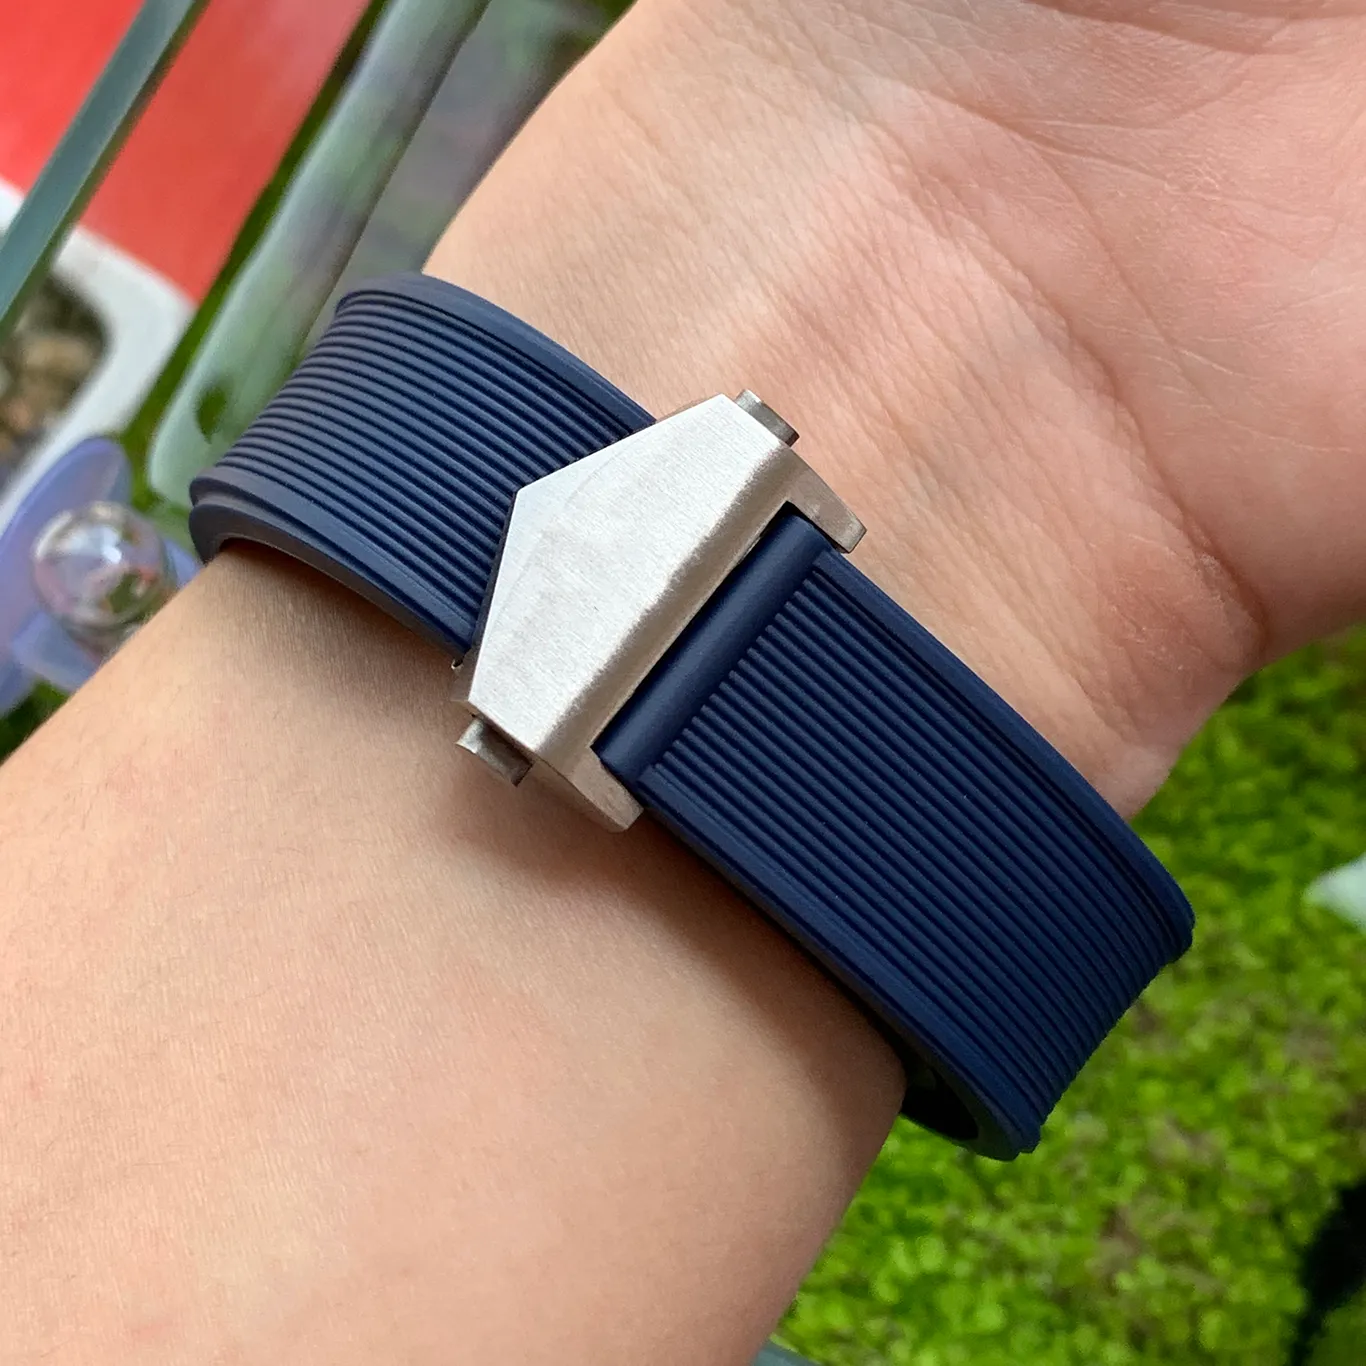 Waterdichte rubberen horlogeband roestvrij staal vouwgesp horlogeband voor AQUARACER armband horloge man 22-18 mm zwart blauw bruin258a